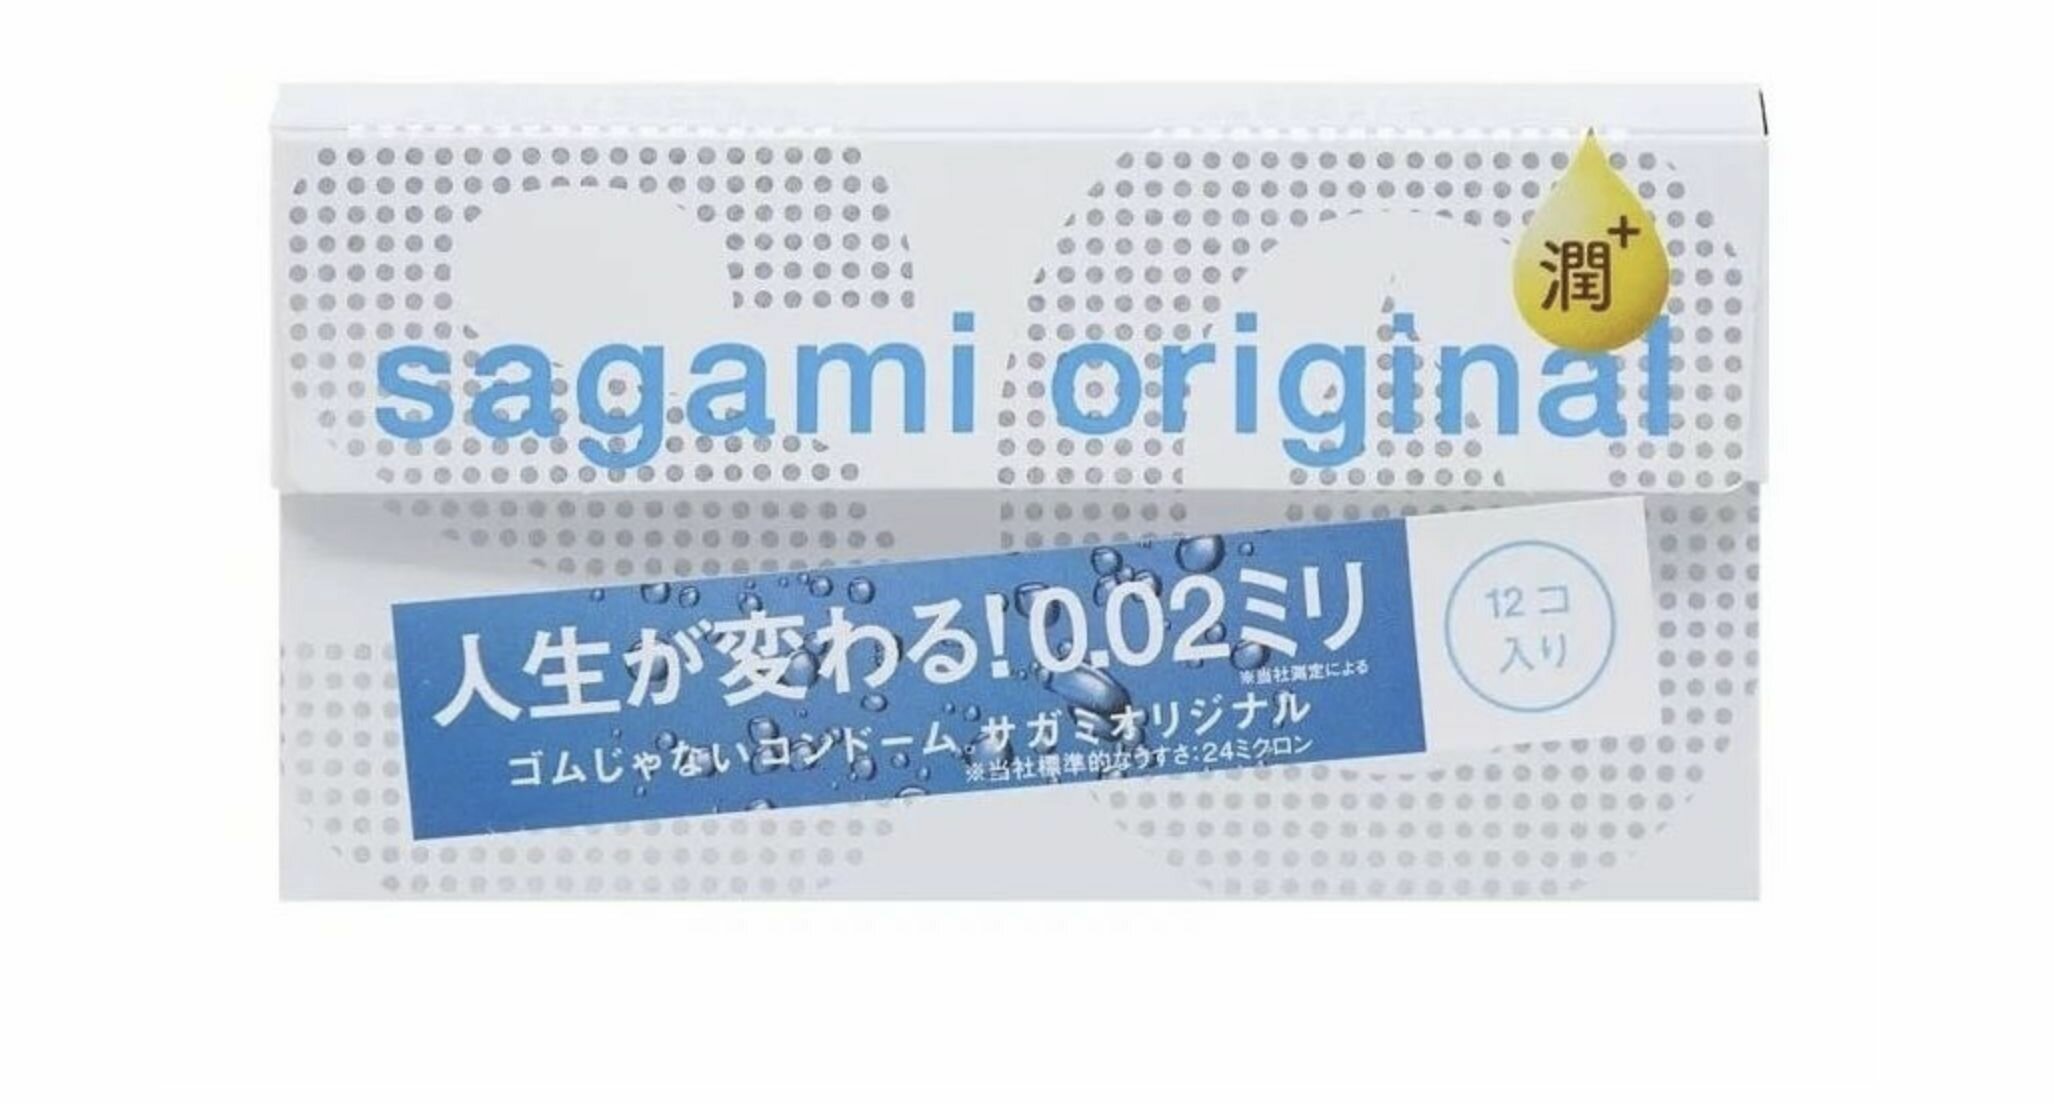 Sagami Ультратонкие презервативы Original 0.02 Extra Lub с увеличенным количеством смазки - 12 шт